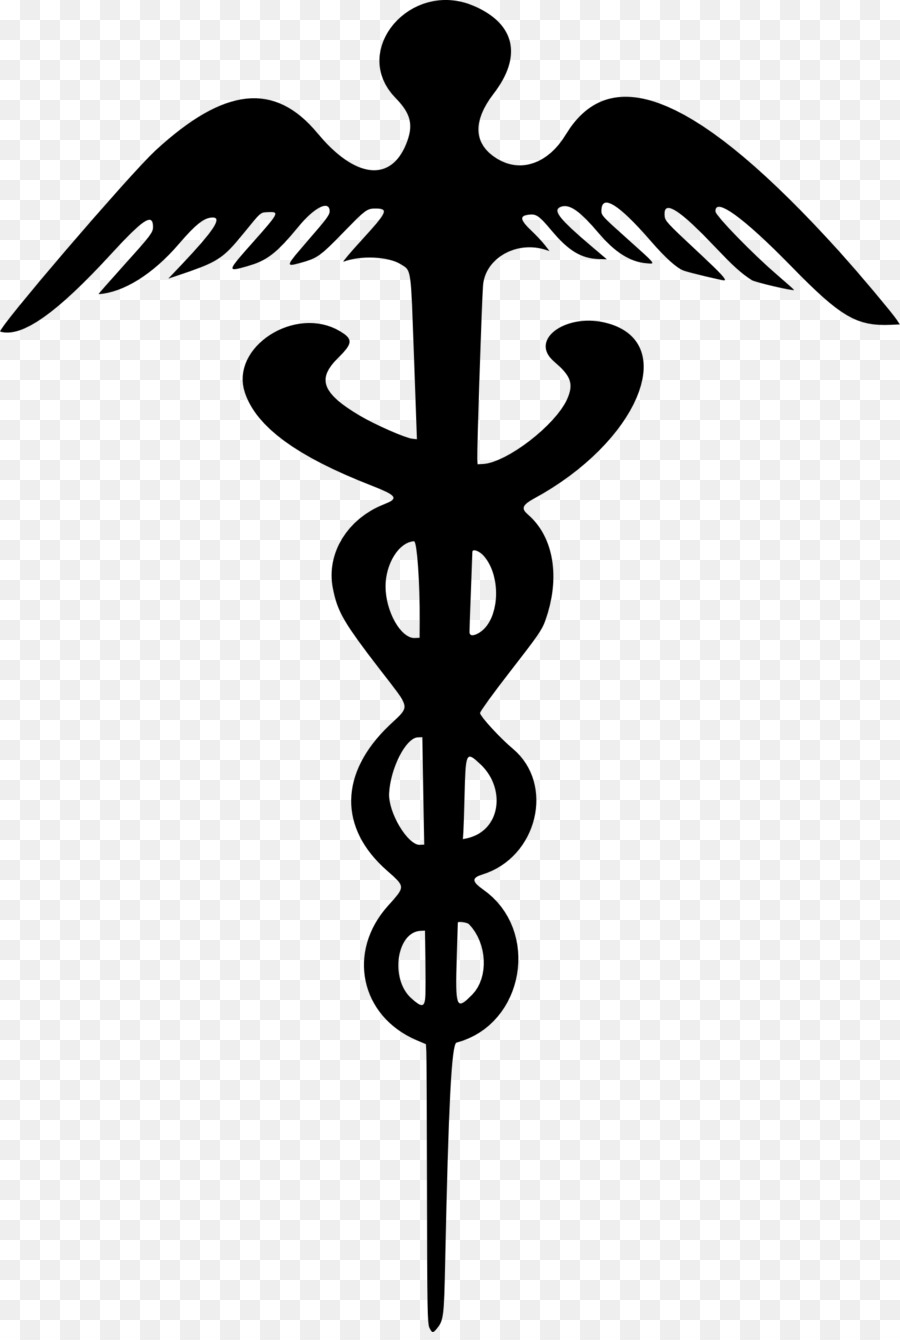 Firkin Symbol Clip art - Caduceus Medical Symbol png download - 1622*2400 - Free Transparent Firkin png Download.